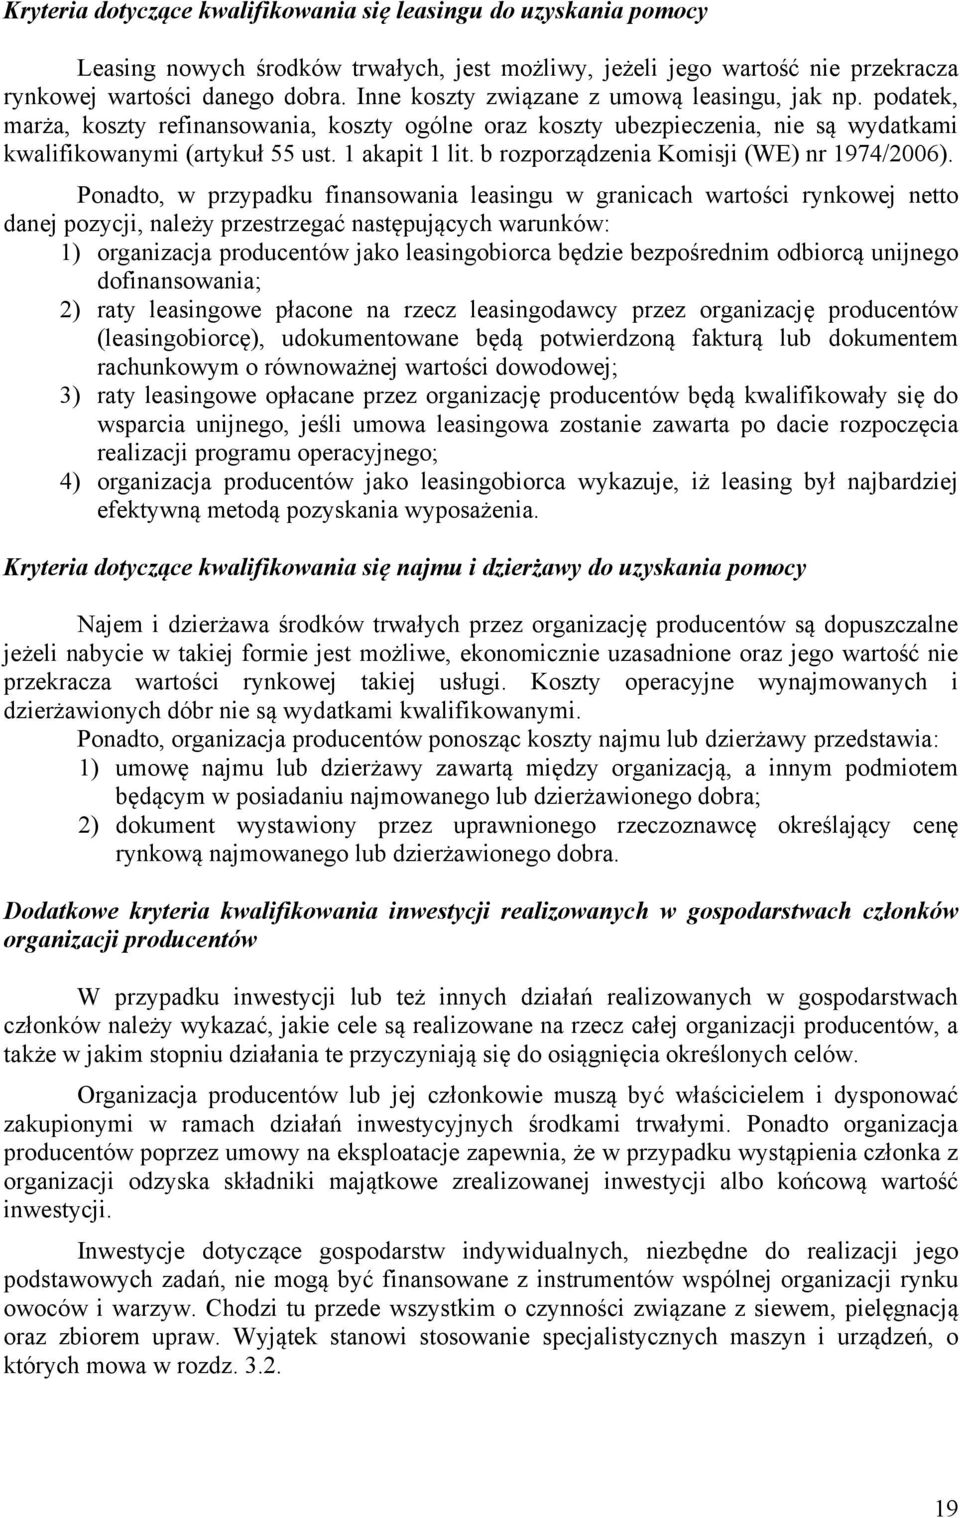 b rozporządzenia Komisji (WE) nr 1974/2006).